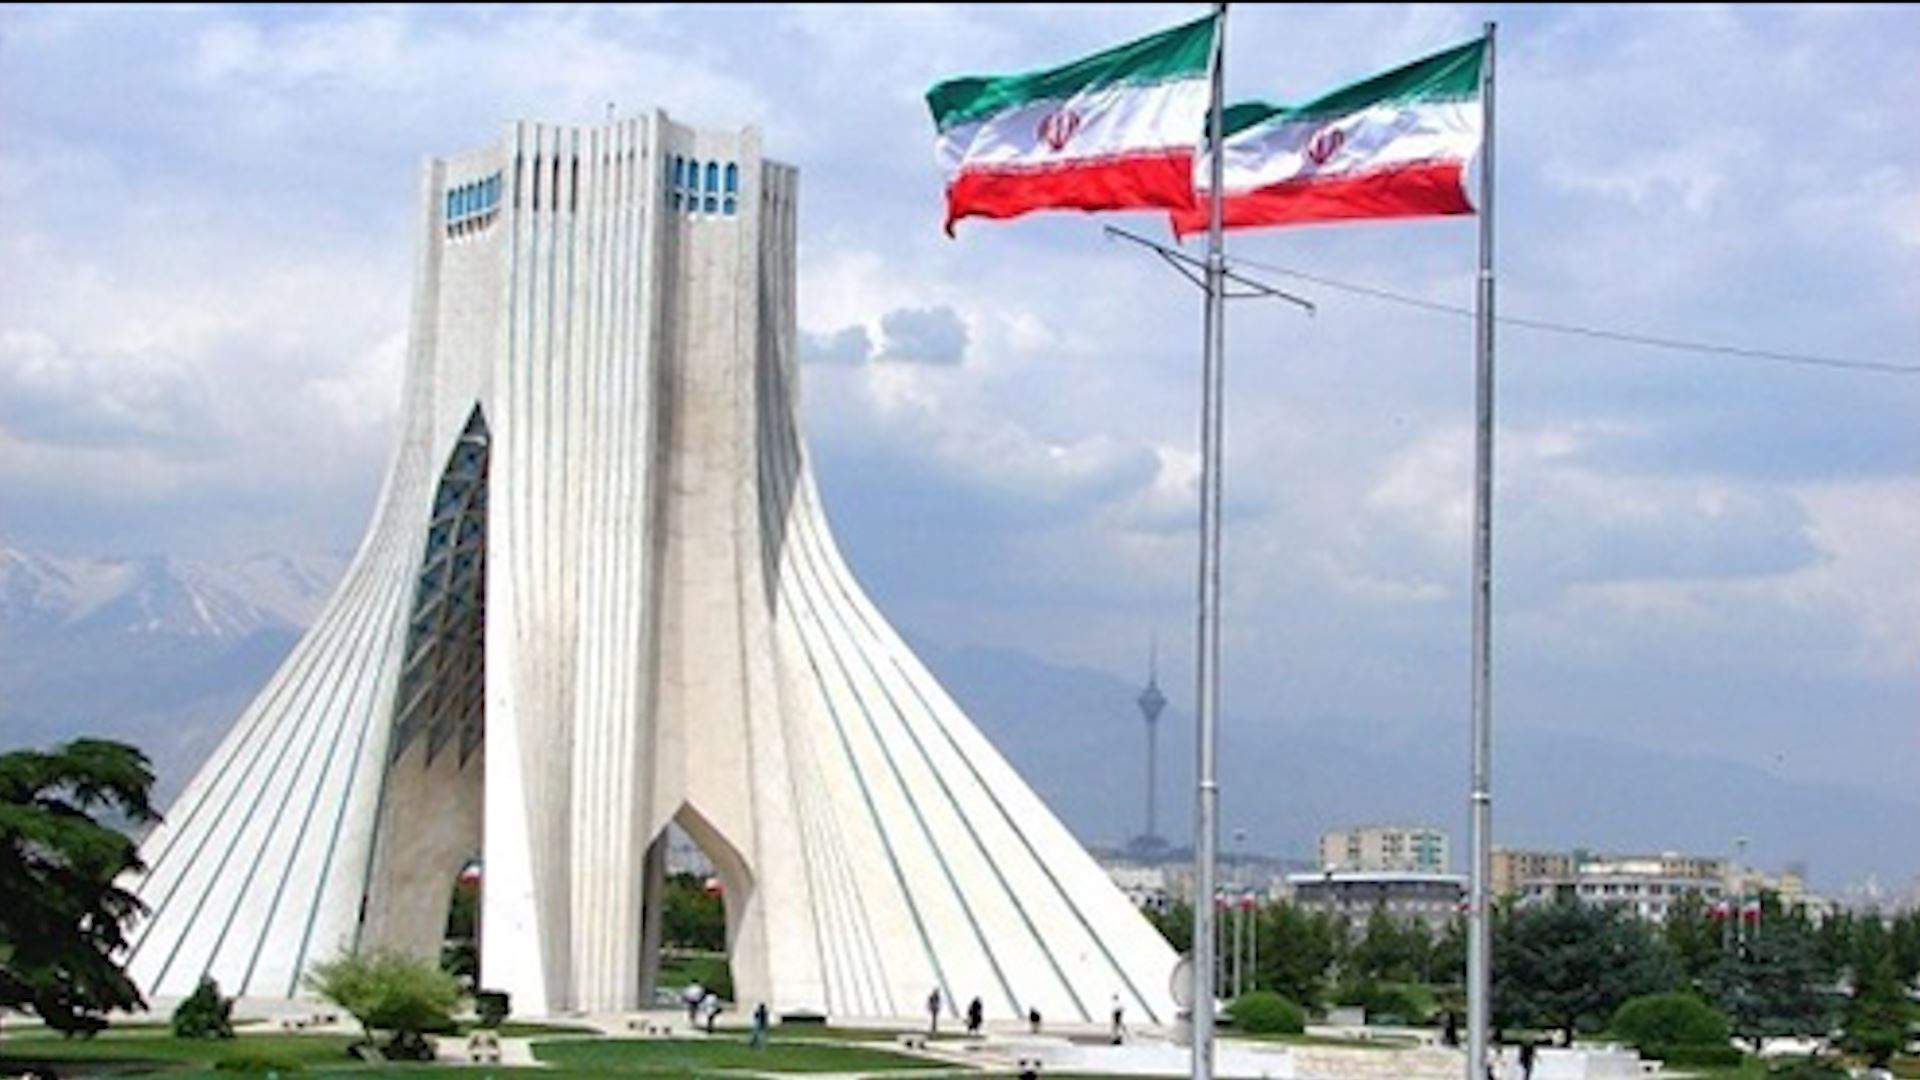  لقاء دولي يجمع إيران بمسؤولين أوروبيين وعرب على رأسهم سعوديون ومصريون في نيويورك